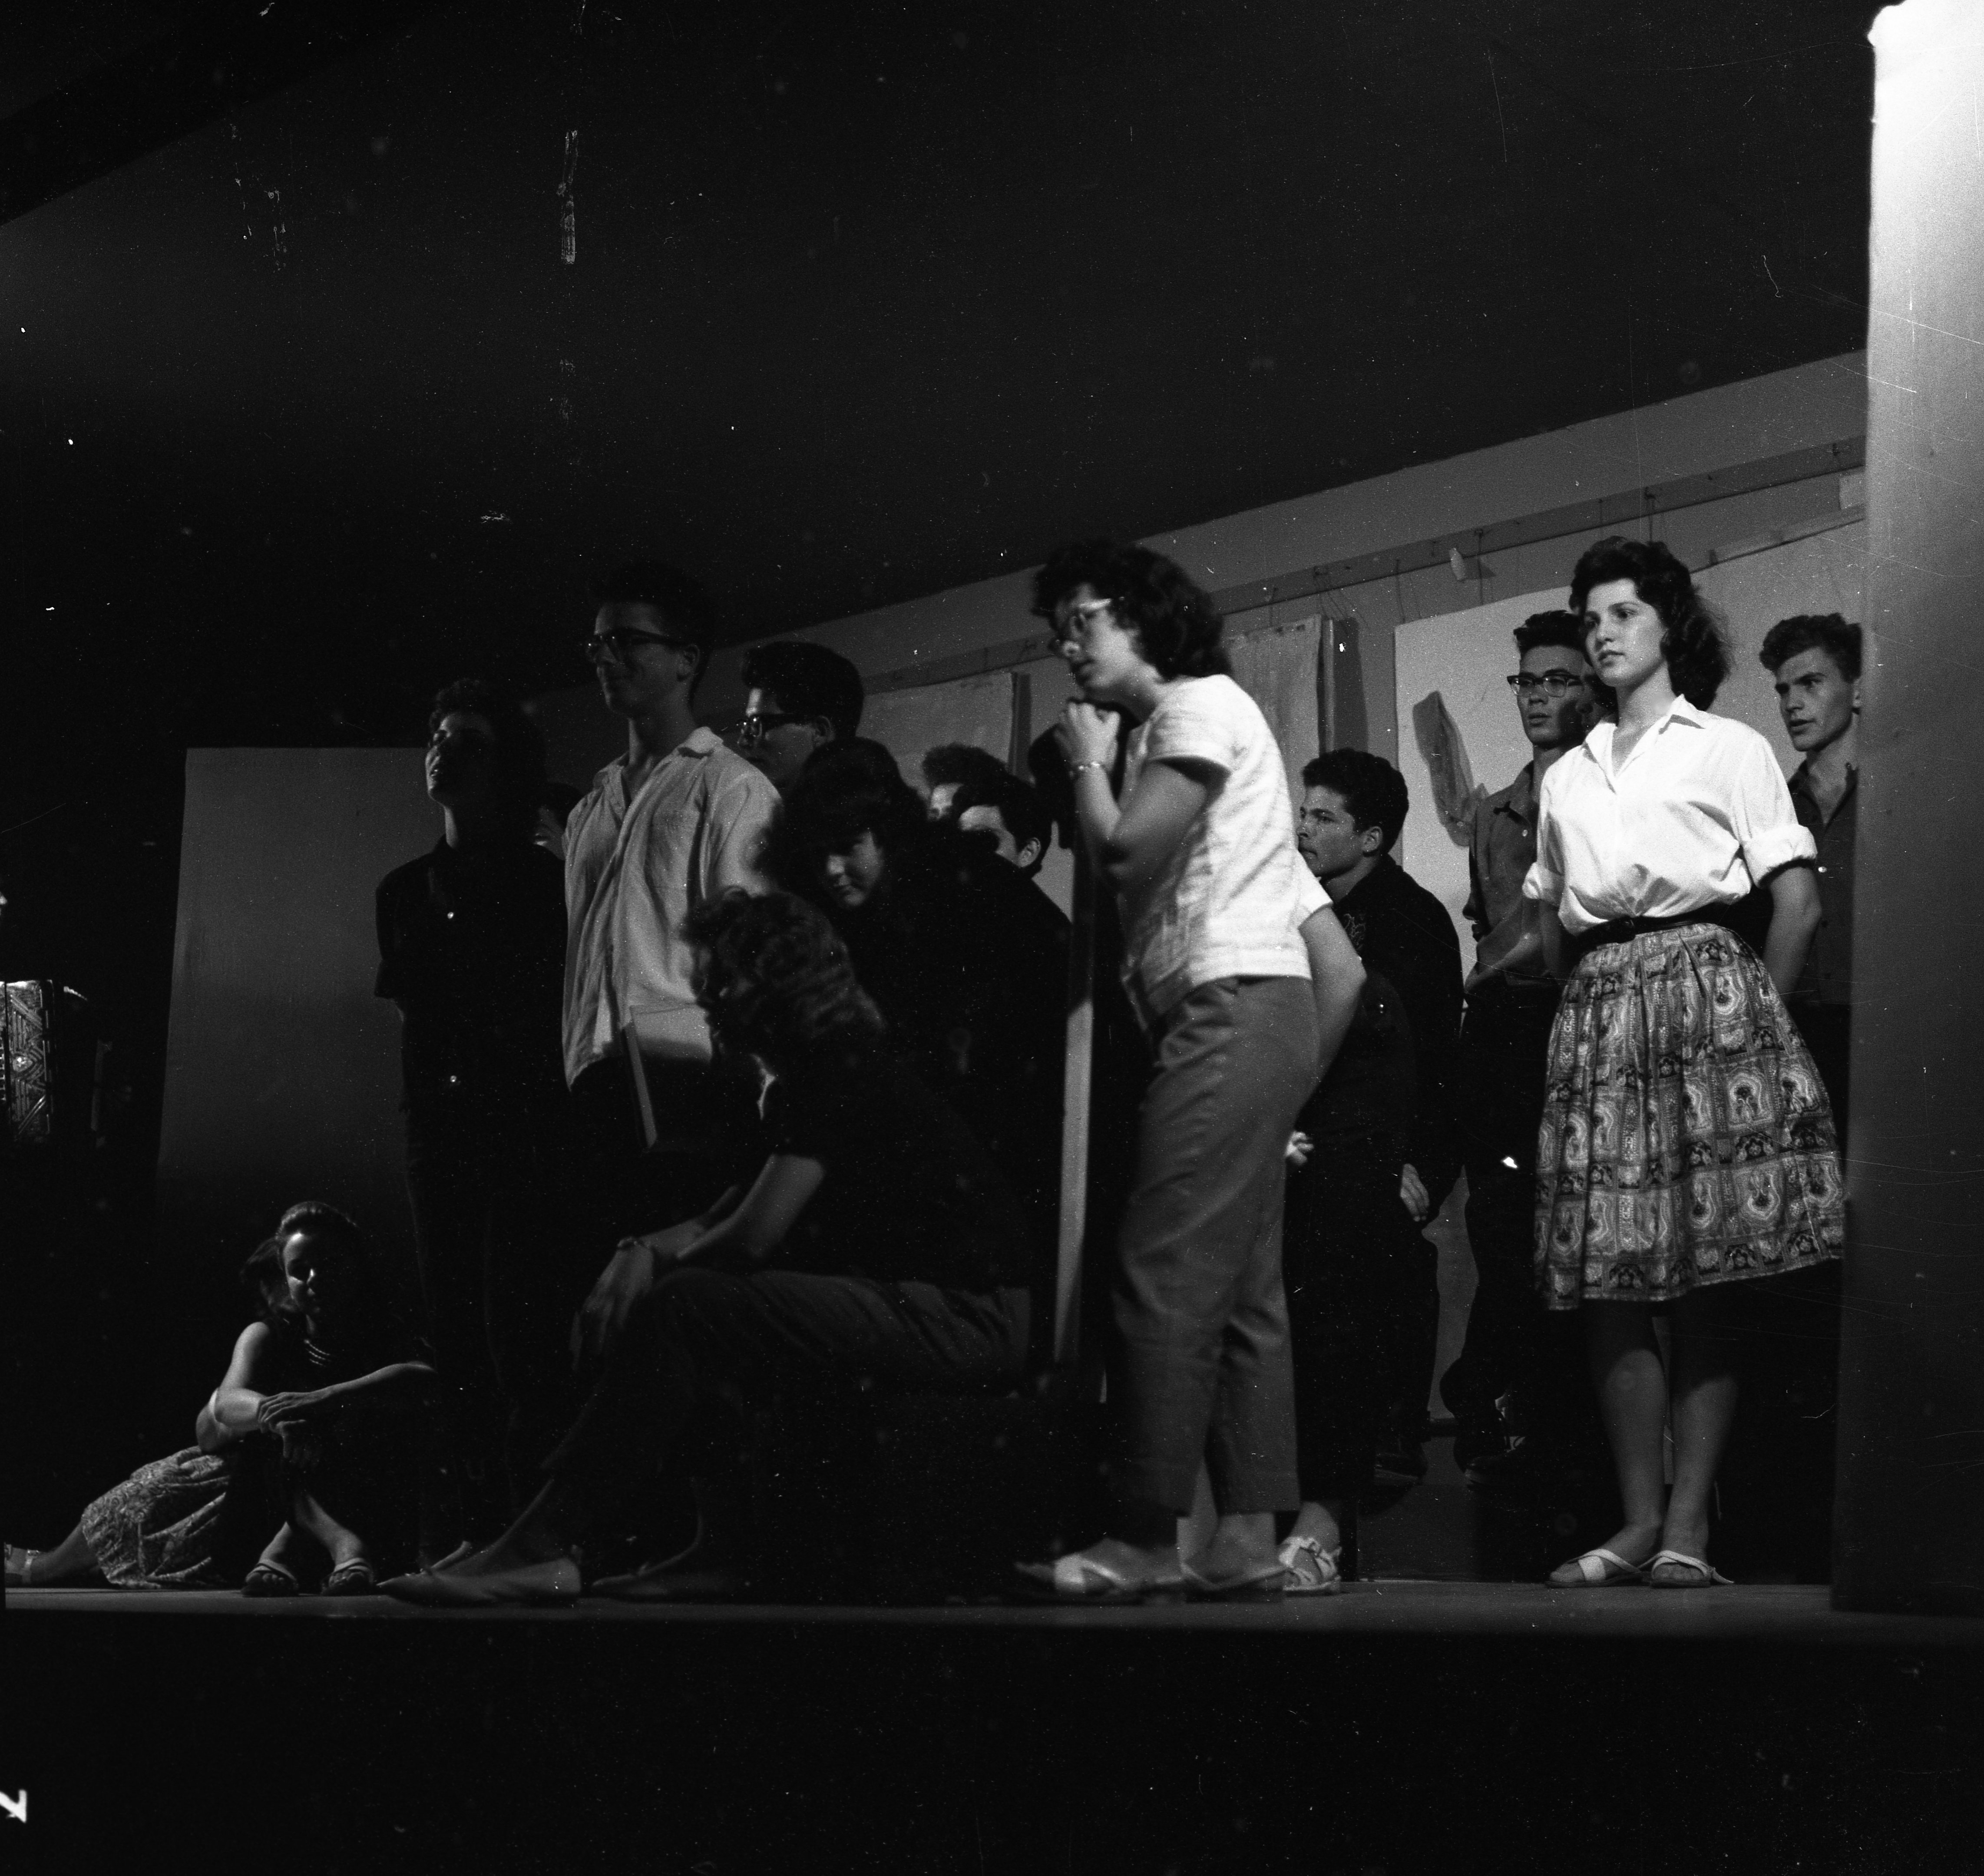  מסיבת סיום הלימודים קבוצת דרור; 1962